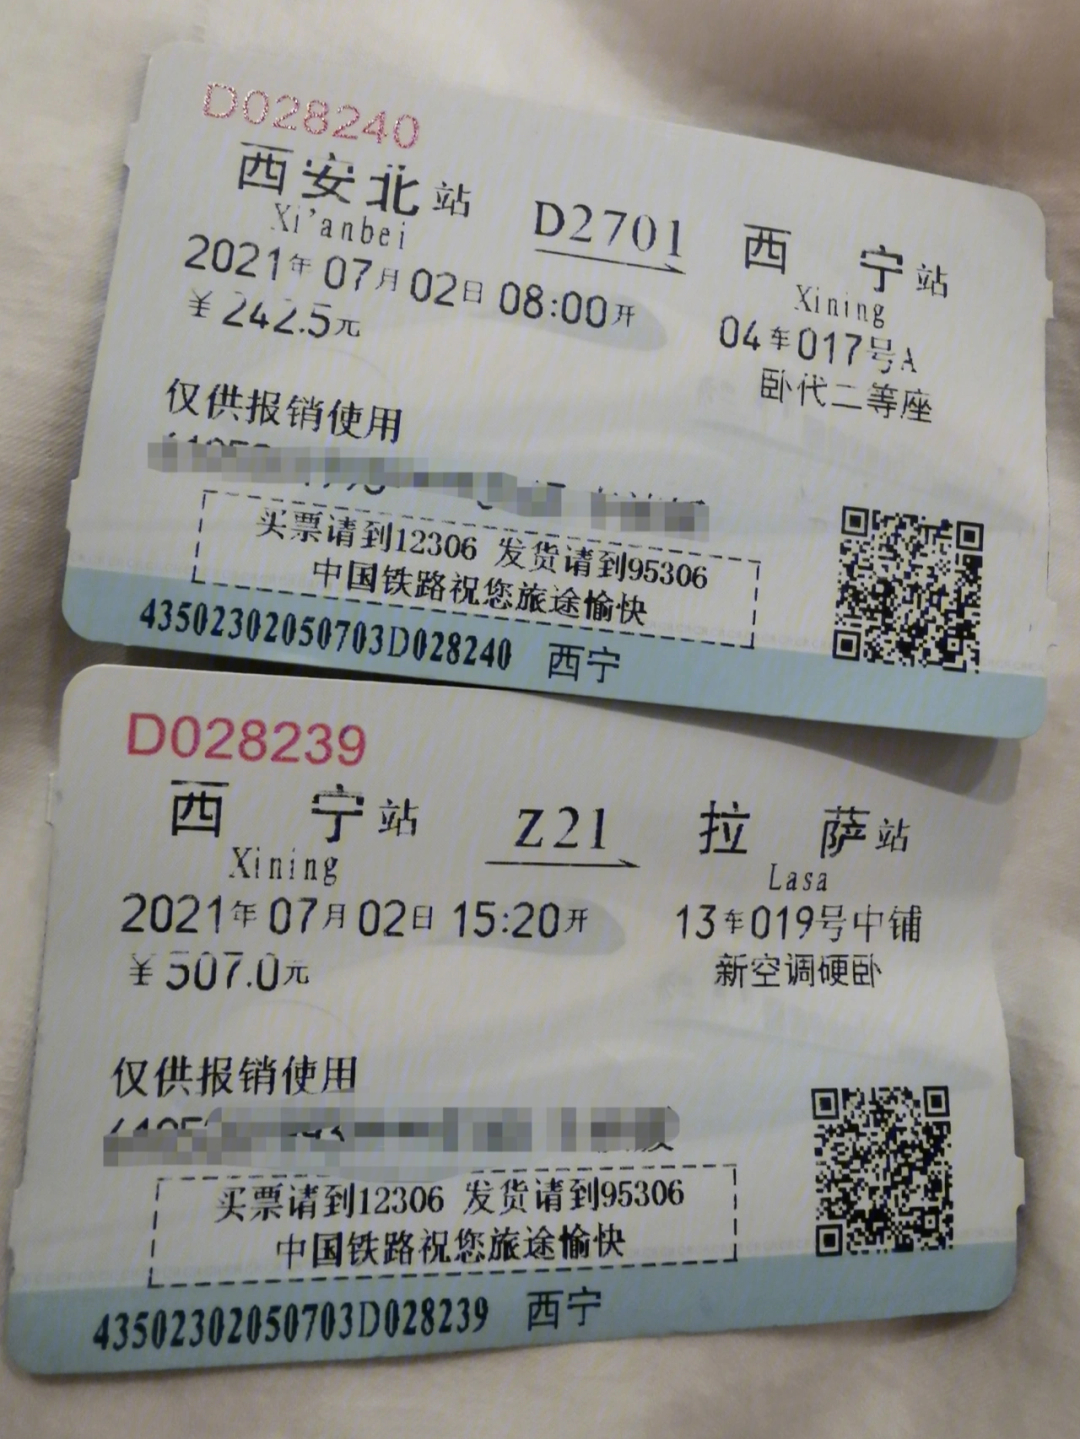 00 乘坐 d2701从西安 出发～pm 13:40到达南宁站～原本15:20出发的z21